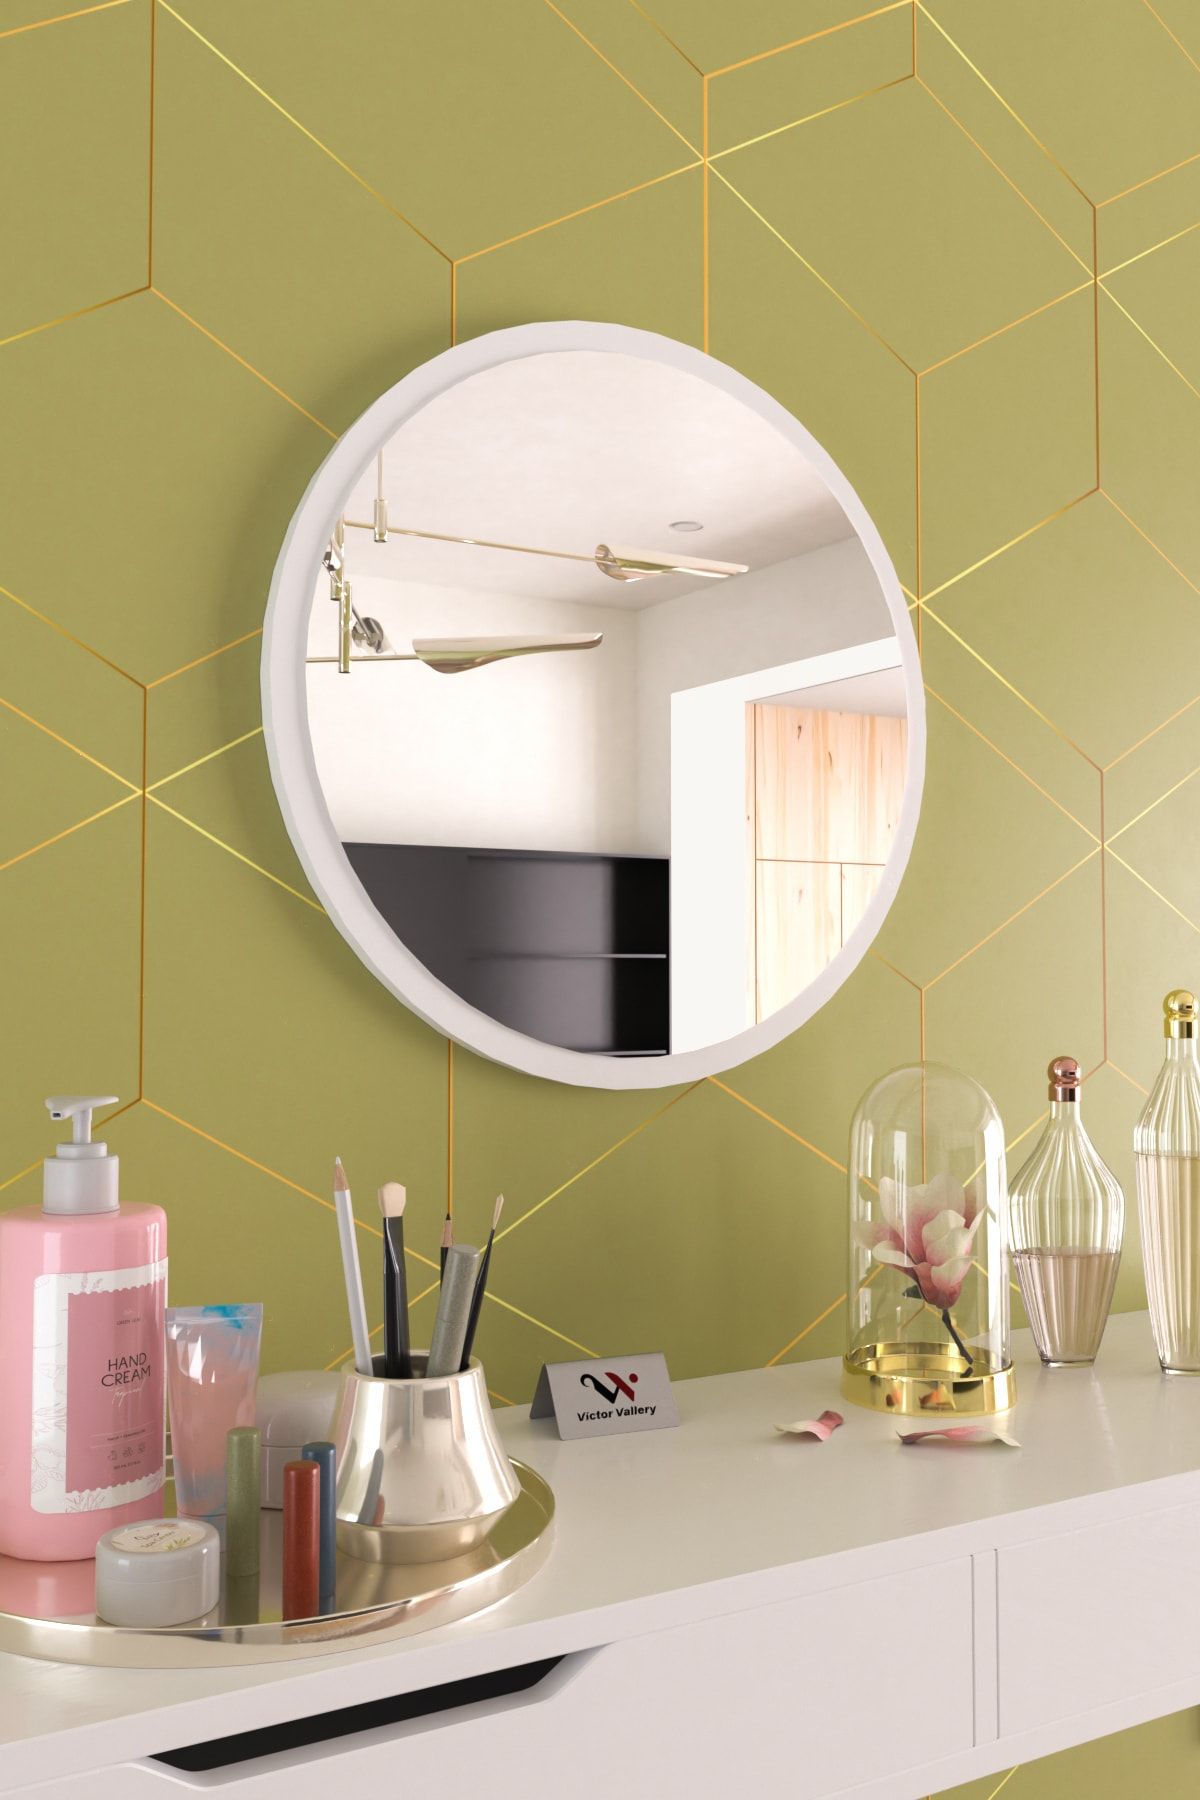 Hediyeler Kapında Beyaz Dekoratif Yuvarlak Duvar Aynası Salon Antre Ofis Salon Wc Banyo Uyumlu 50 Cm